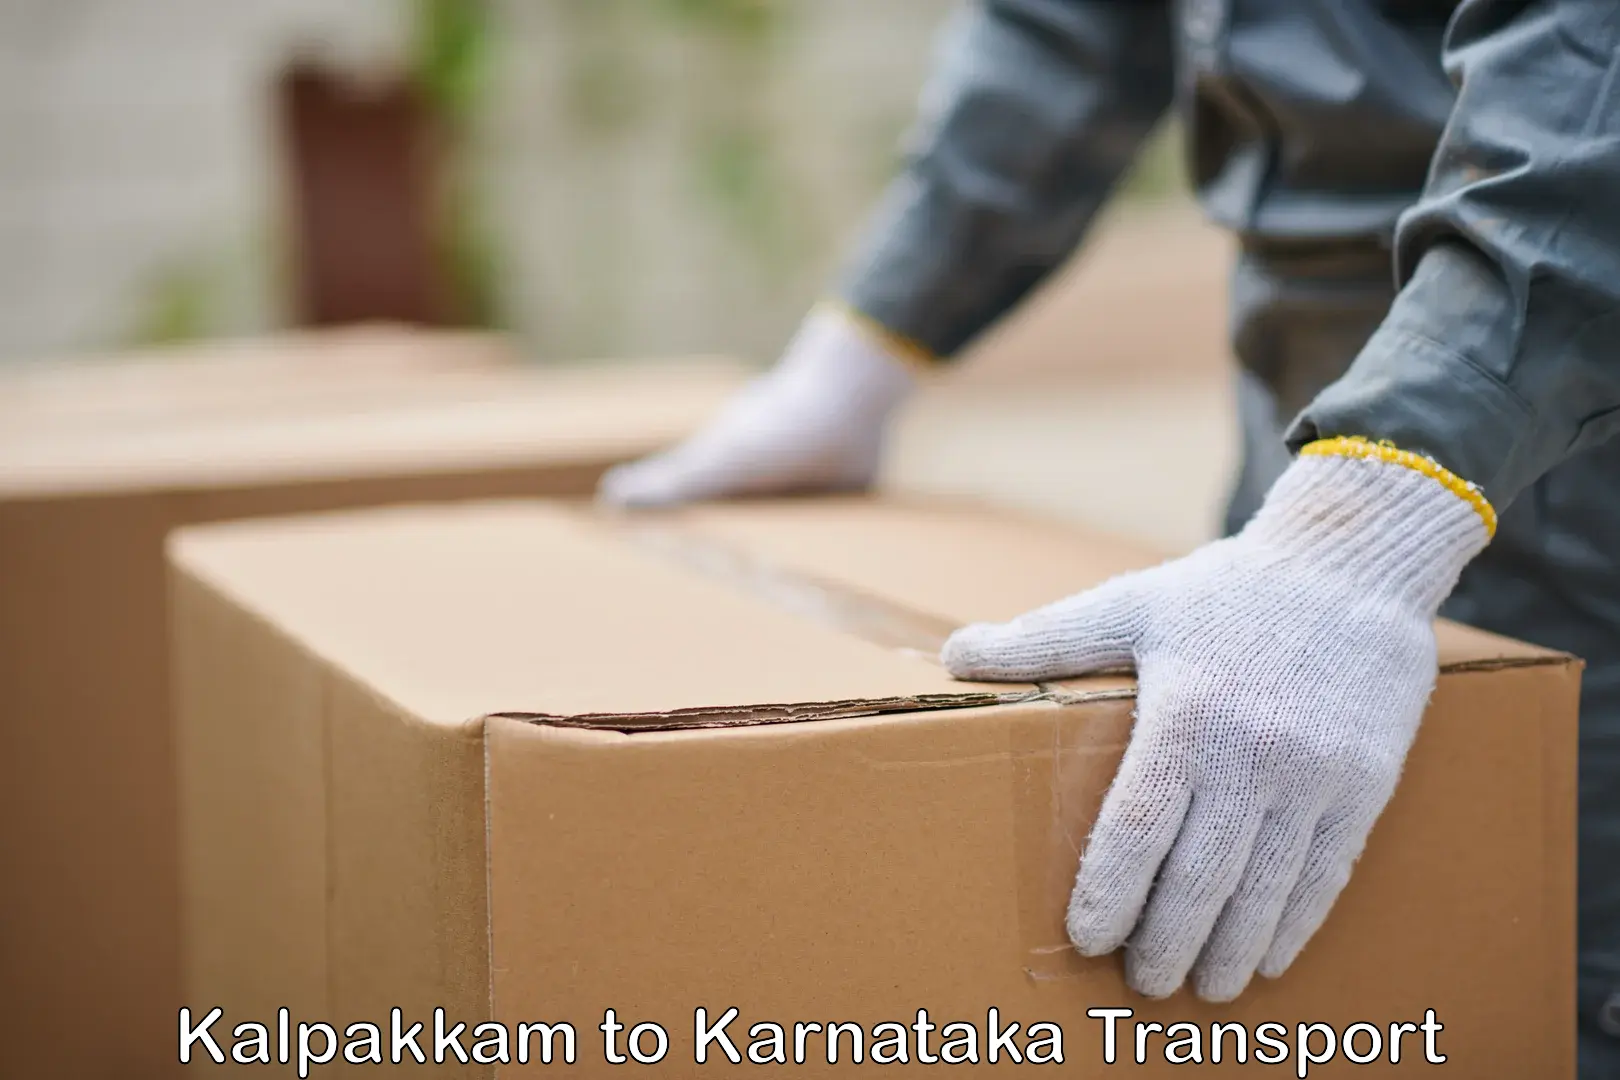 Daily transport service Kalpakkam to Hubli